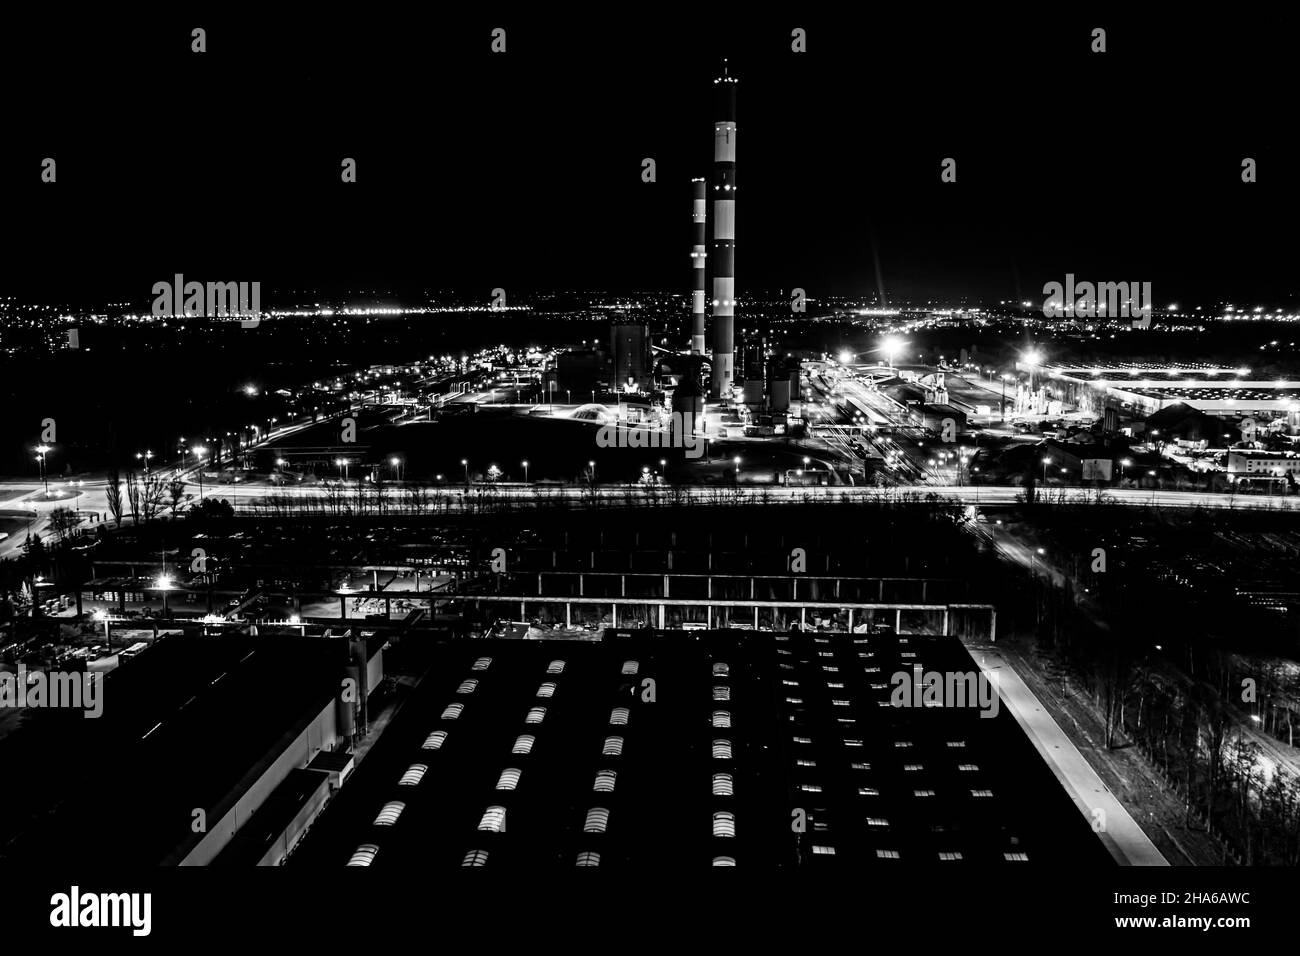 Vue aérienne. Énergie de la centrale électrique industrielle au crépuscule et de nuit. Noir et blanc Banque D'Images